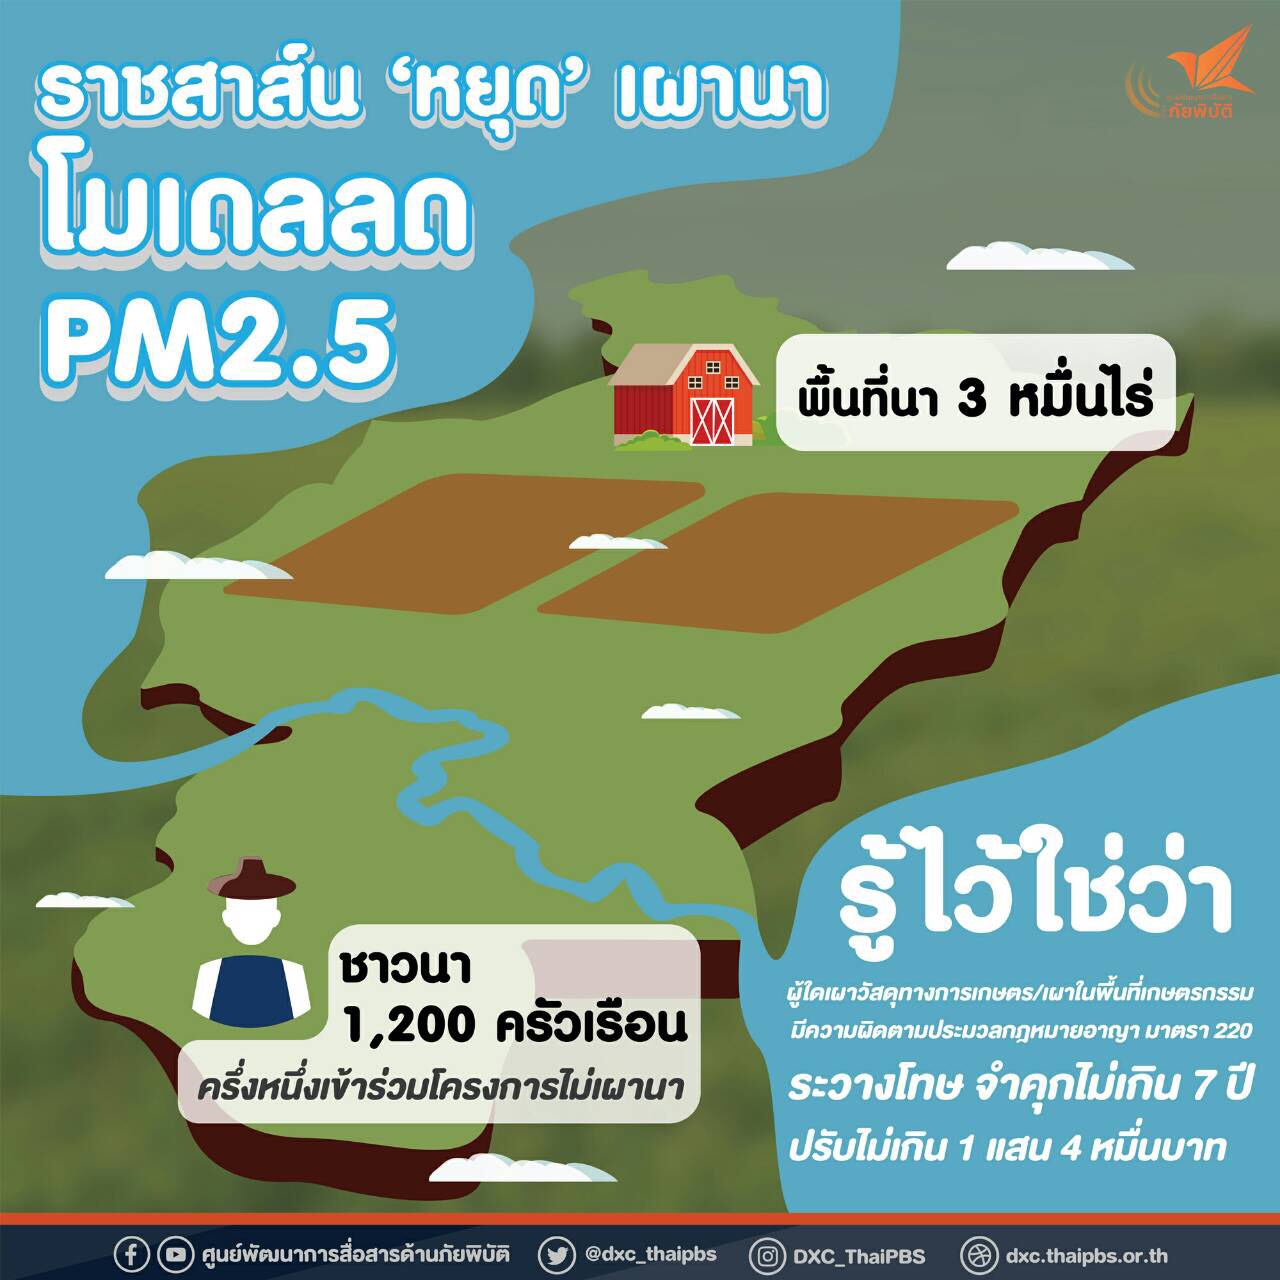 “ราชสาส์นโมเดล” จ.ฉะเชิงเทรา ต้นแบบหยุดเผา ลด PM2.5 thaihealth